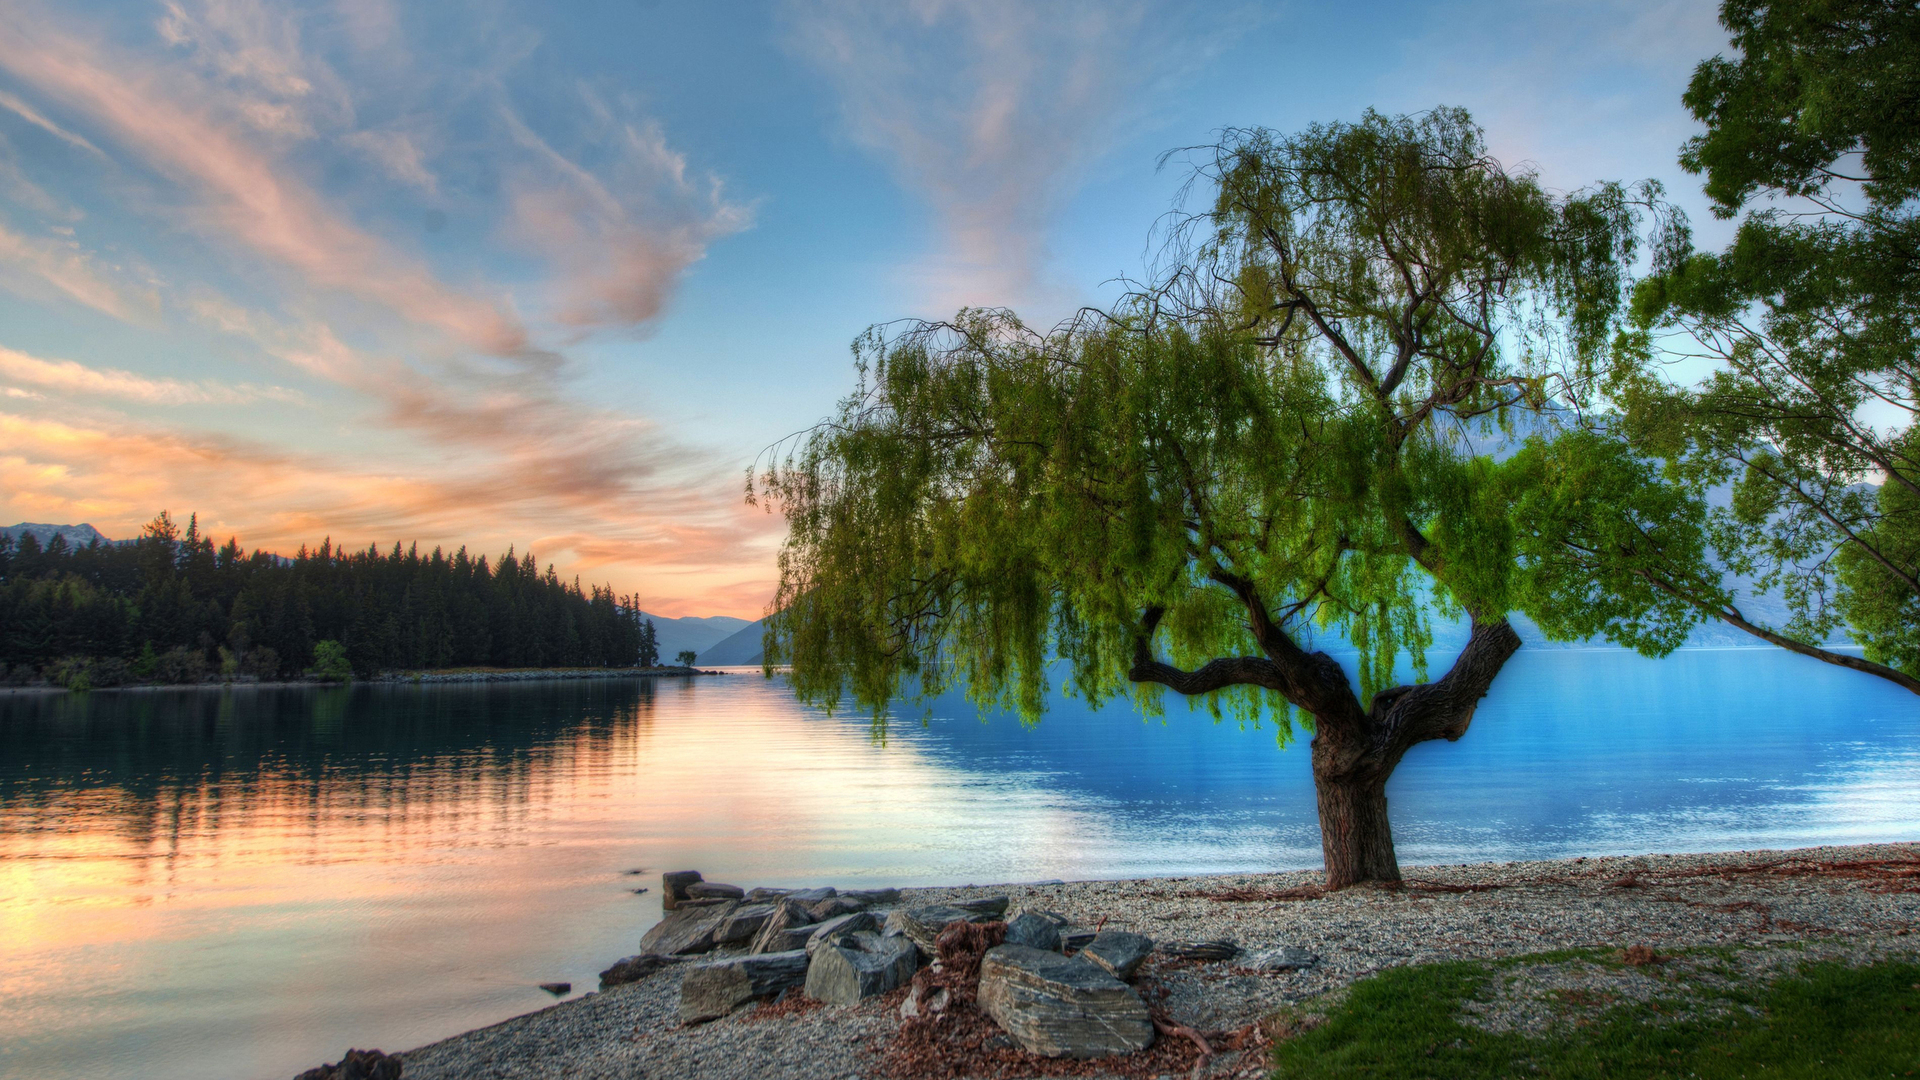 دانلود رایگان عکس مبهم طبیعت حاشیه دریاچه برای پست و استوری 